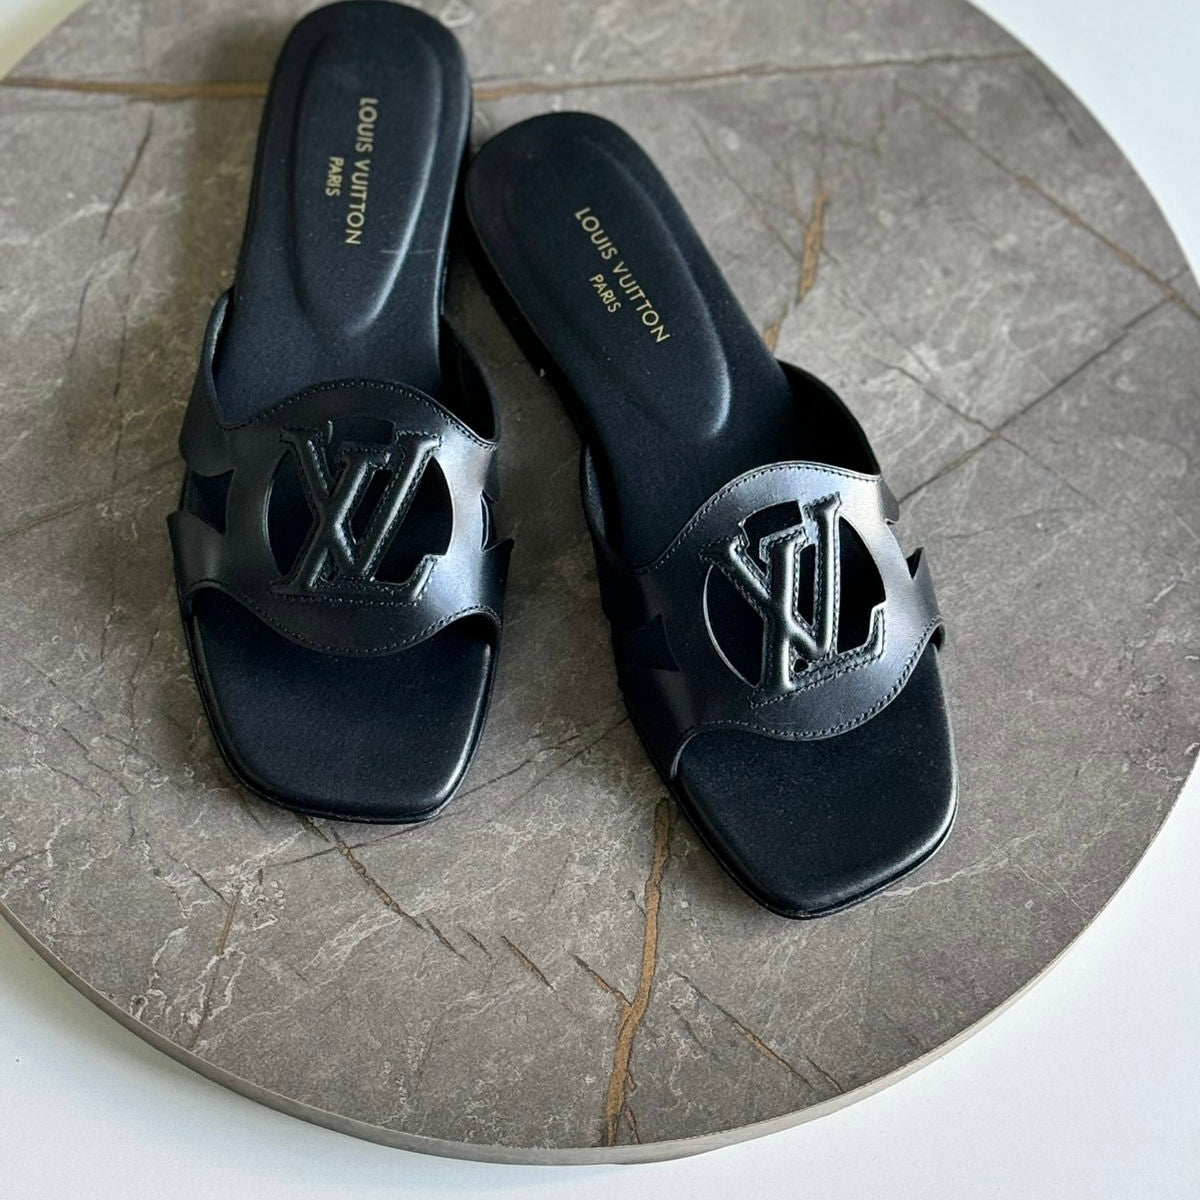 Louis Vuitton Style #6 Shoes